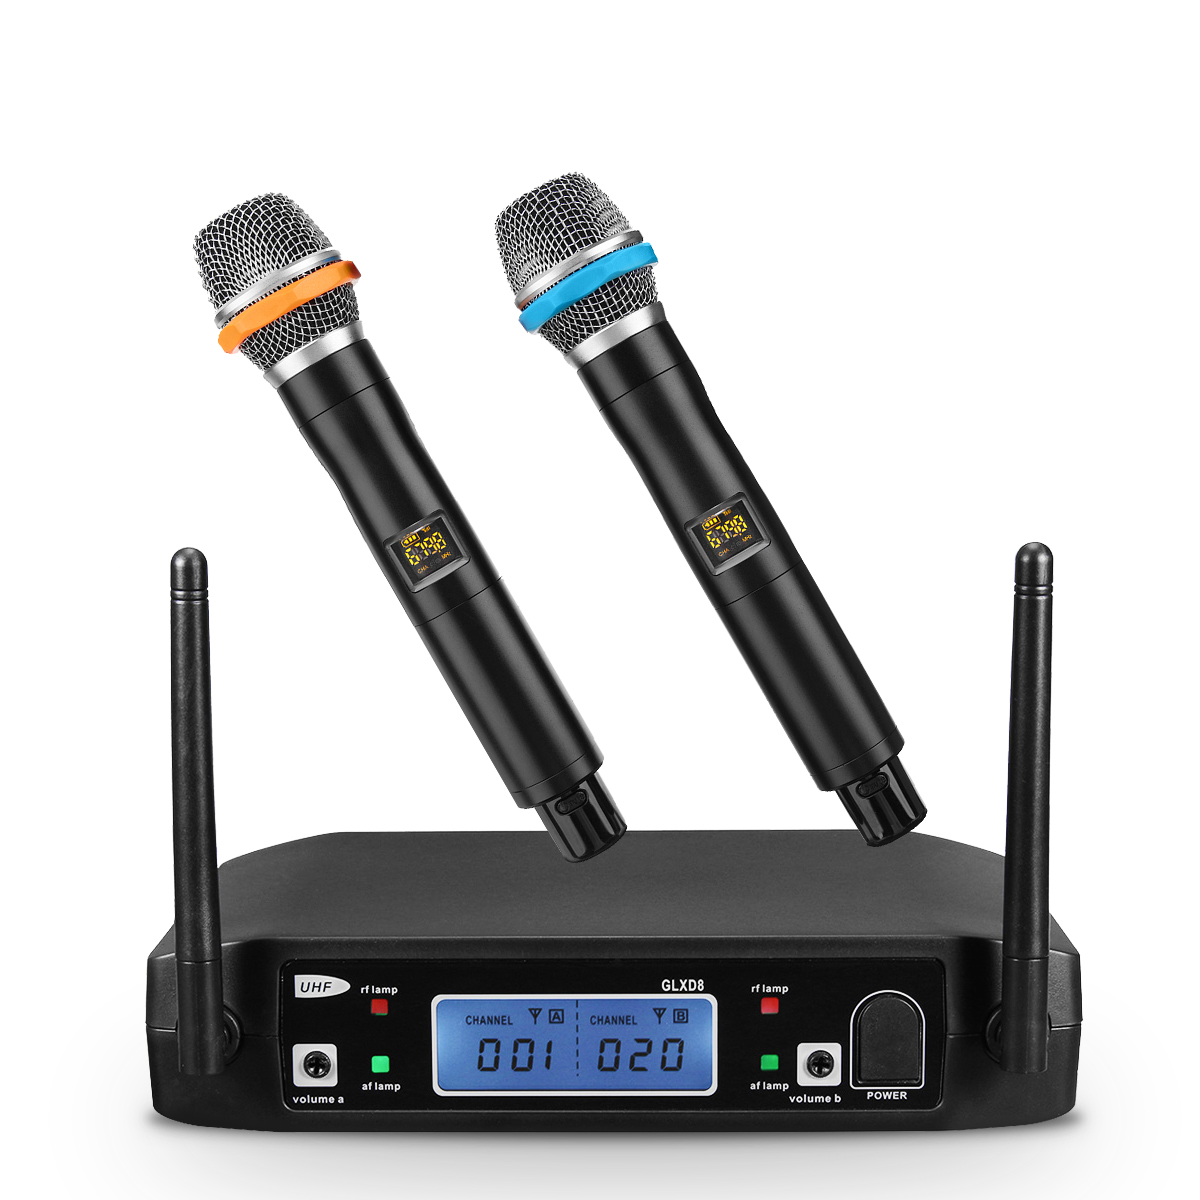 

GLXD8-B Anti-wrestling LCD Wireless Handheld Микрофон Динамик US / AU Plug для телевизора сотового телефона ПК